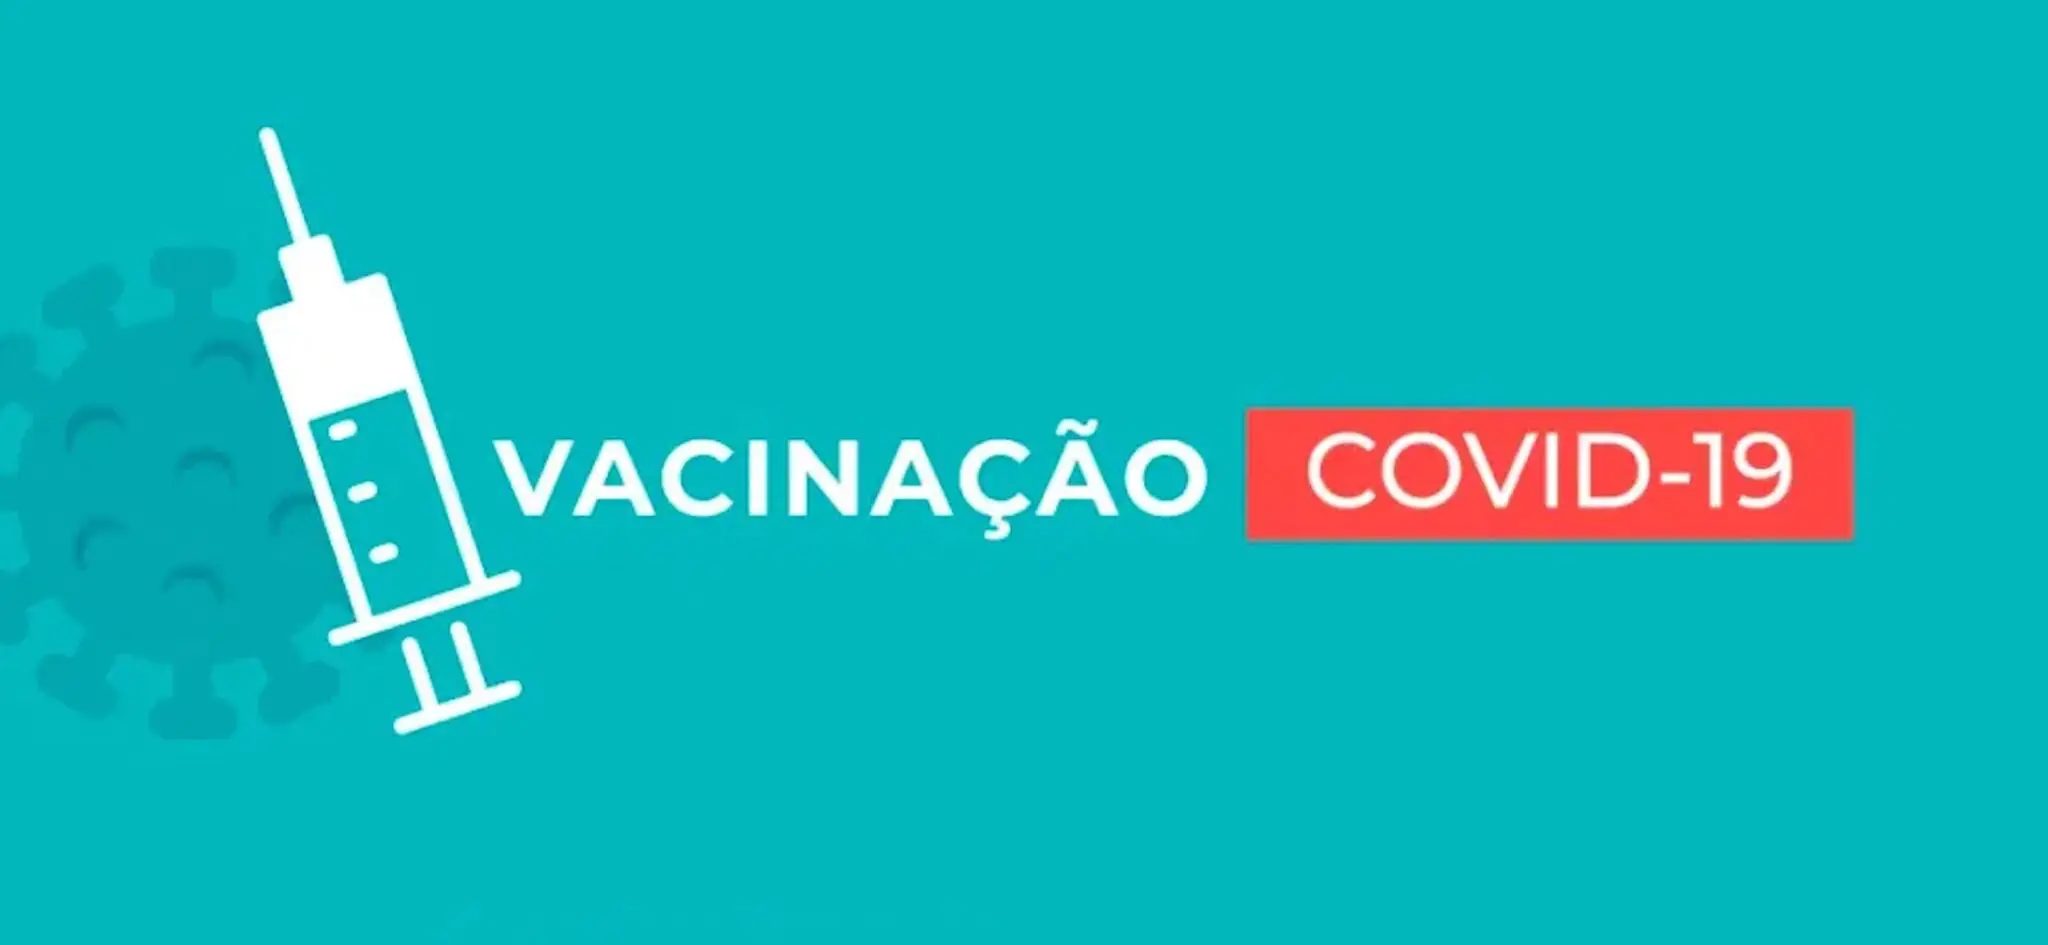 Vacinacao Covid-19